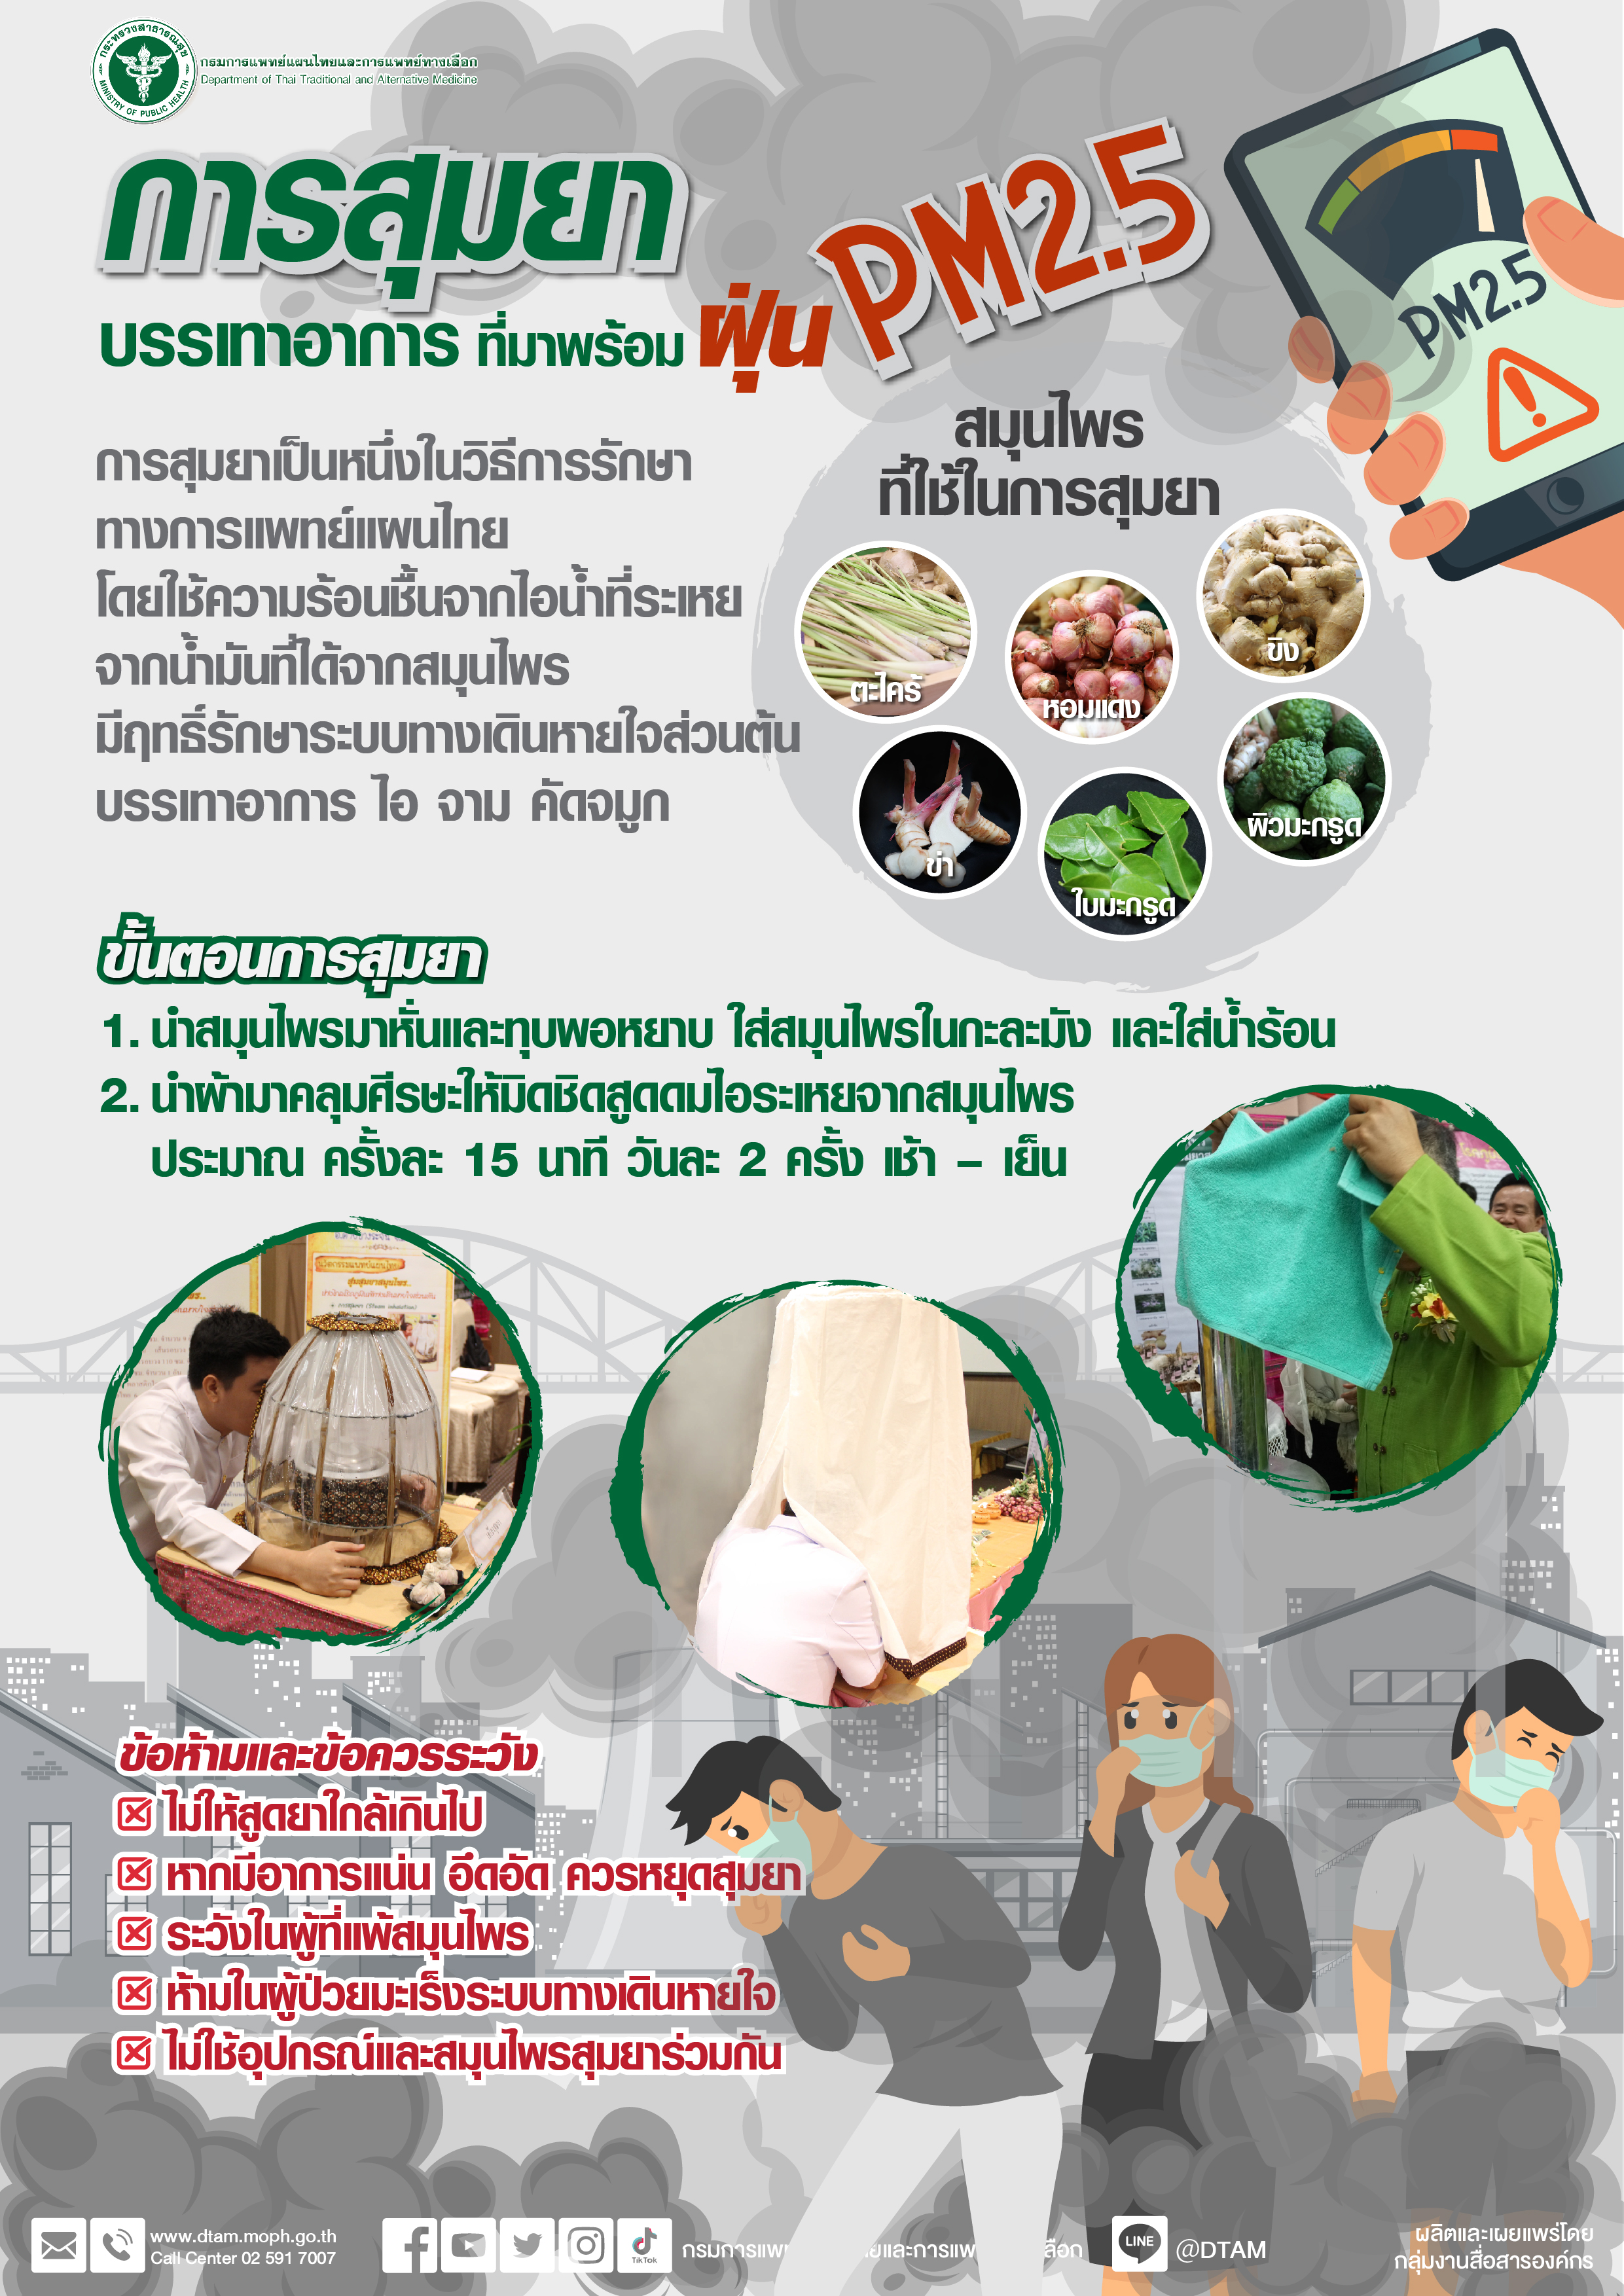 การสุมยาเป็นหนึ่งวิธีทางการแพทย์แผนไทยที่บรรเทาอาการ ไอ จามคัด จมูก